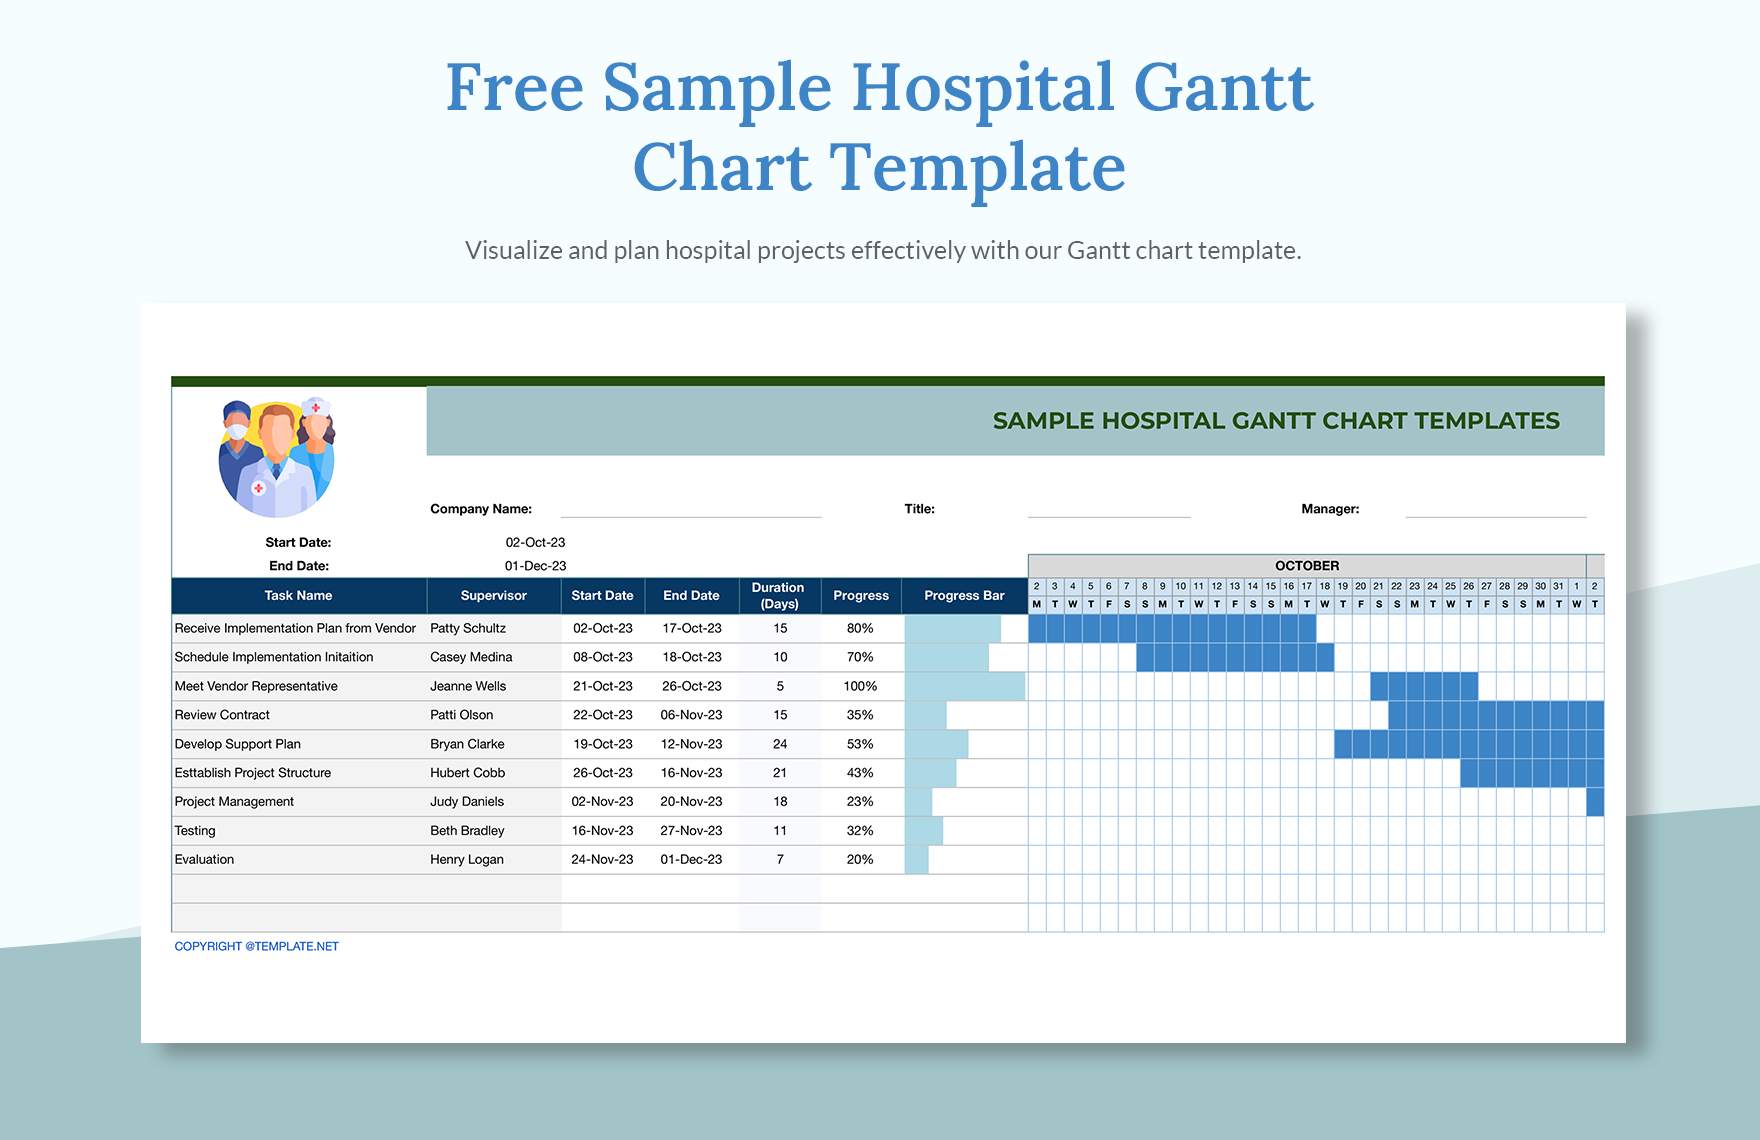 Sample Hospital gantt chart